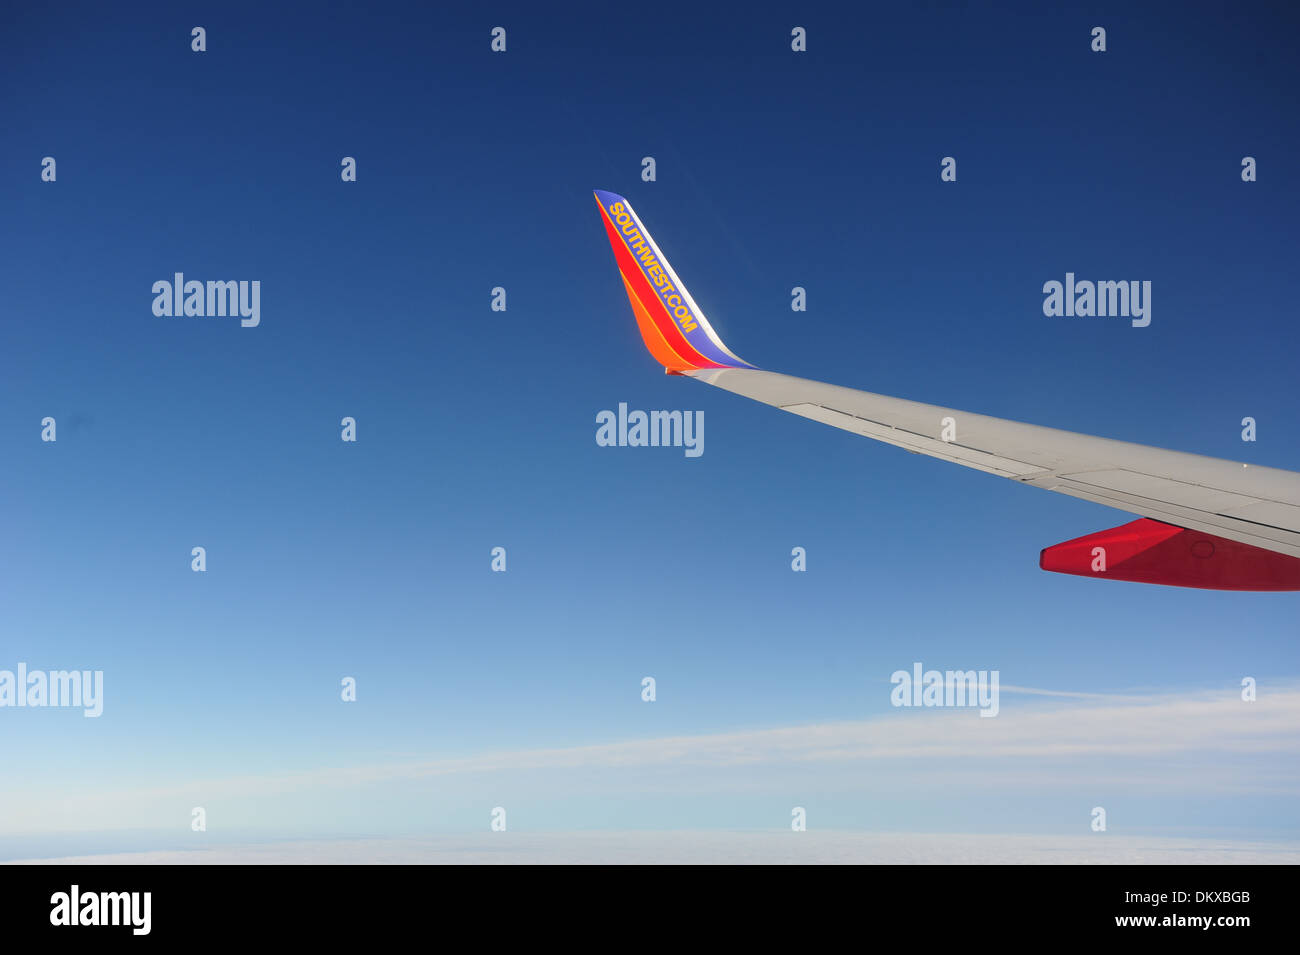 Southwest Airlines ala con aletta sul parafango di Boeing 737-700 jet in volo sopra le nuvole Foto Stock